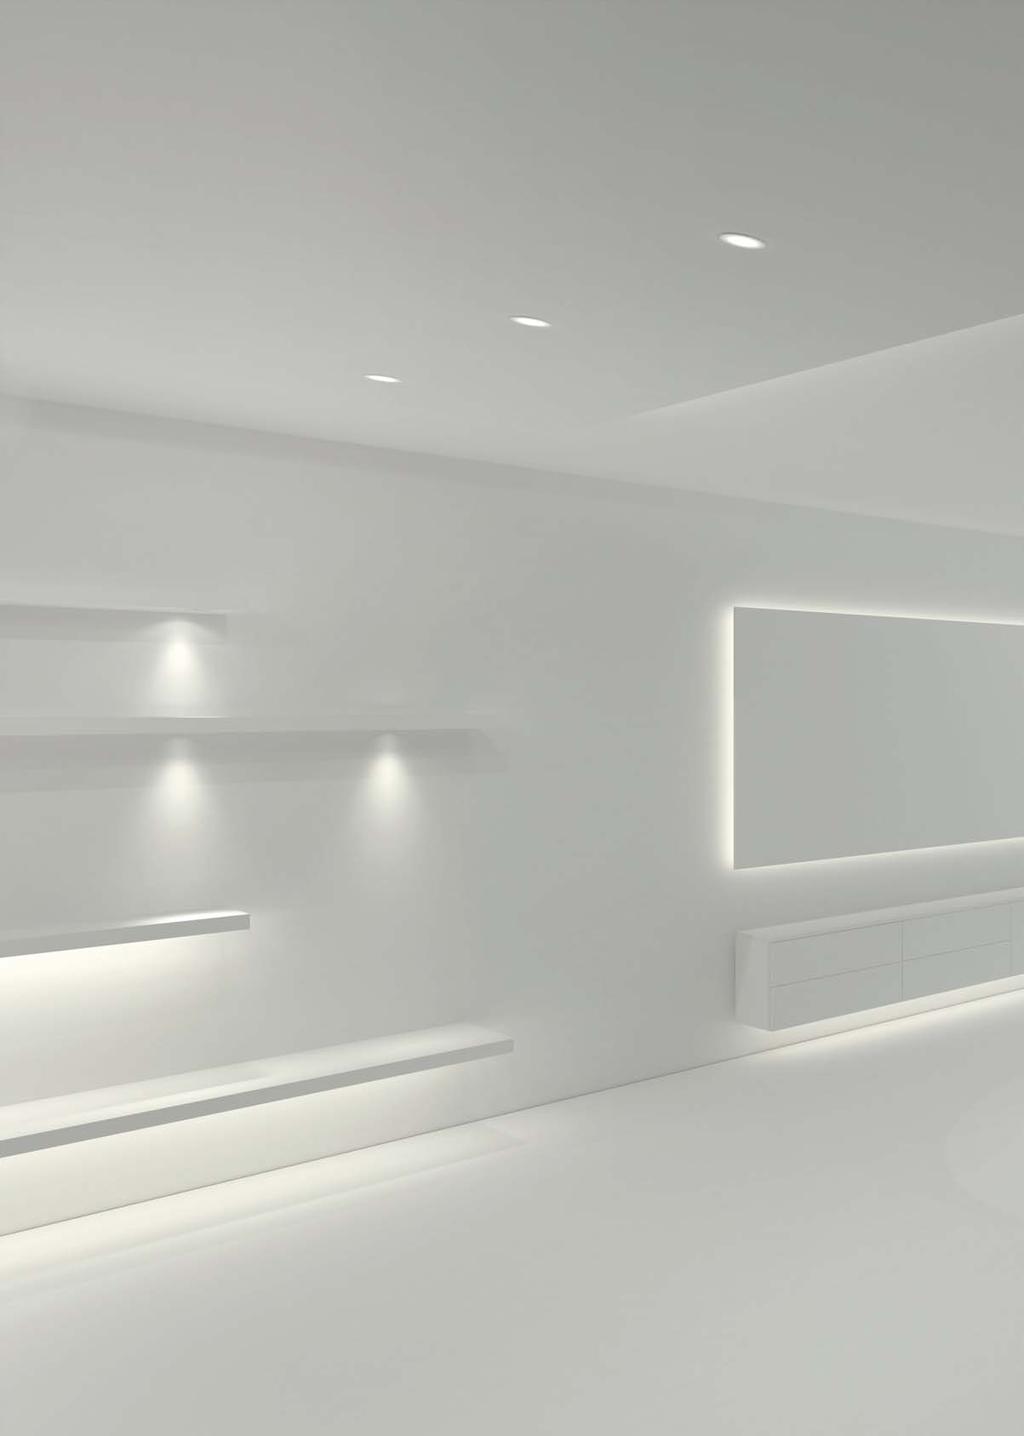 LOOX. LUZ LED CON SISTEMA. DIÁLOGO DE AMBIENTES. Luz LED en los muebles y equipamientos. Ampliación efectista de la iluminación de las habitaciones.